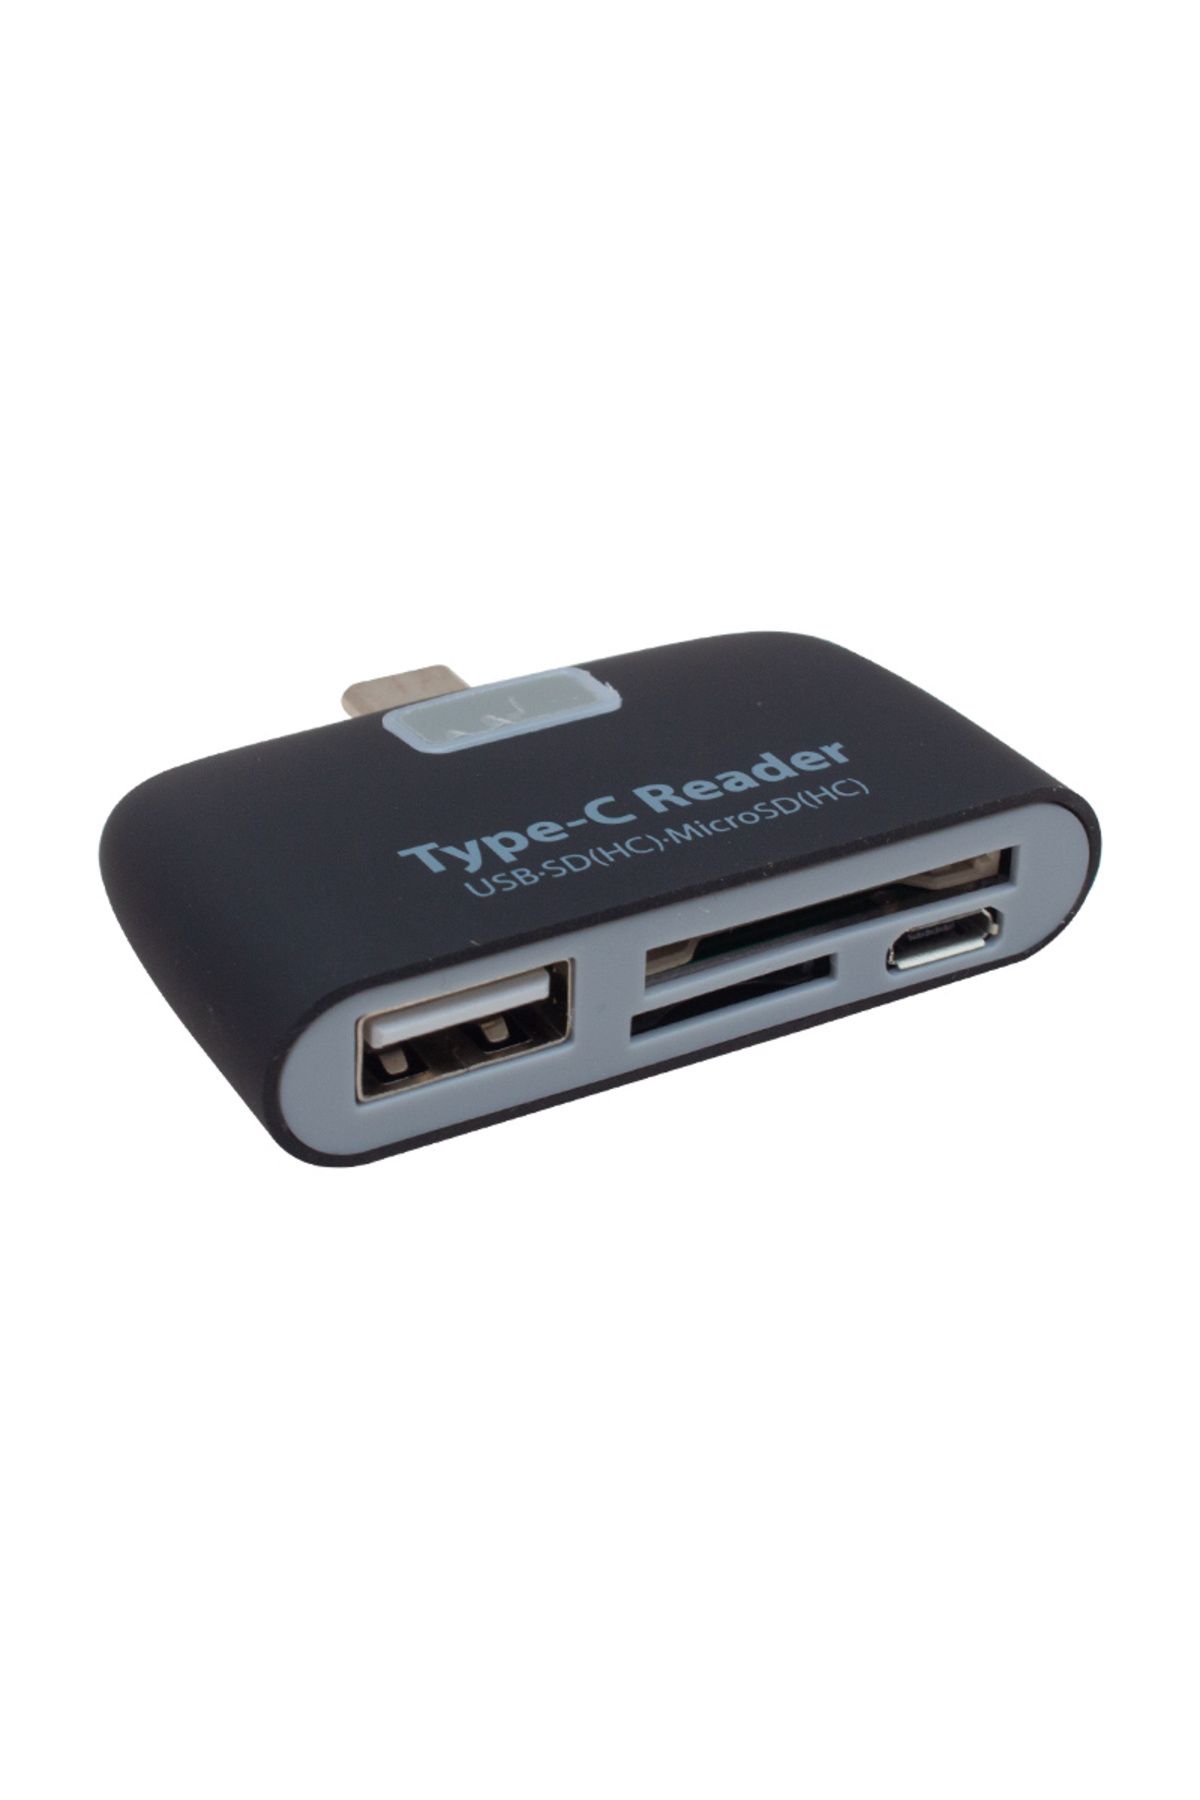 KAYAMU USB TYPE-C 3.1 SD+TF KART OKUYUCU KİT (K0)